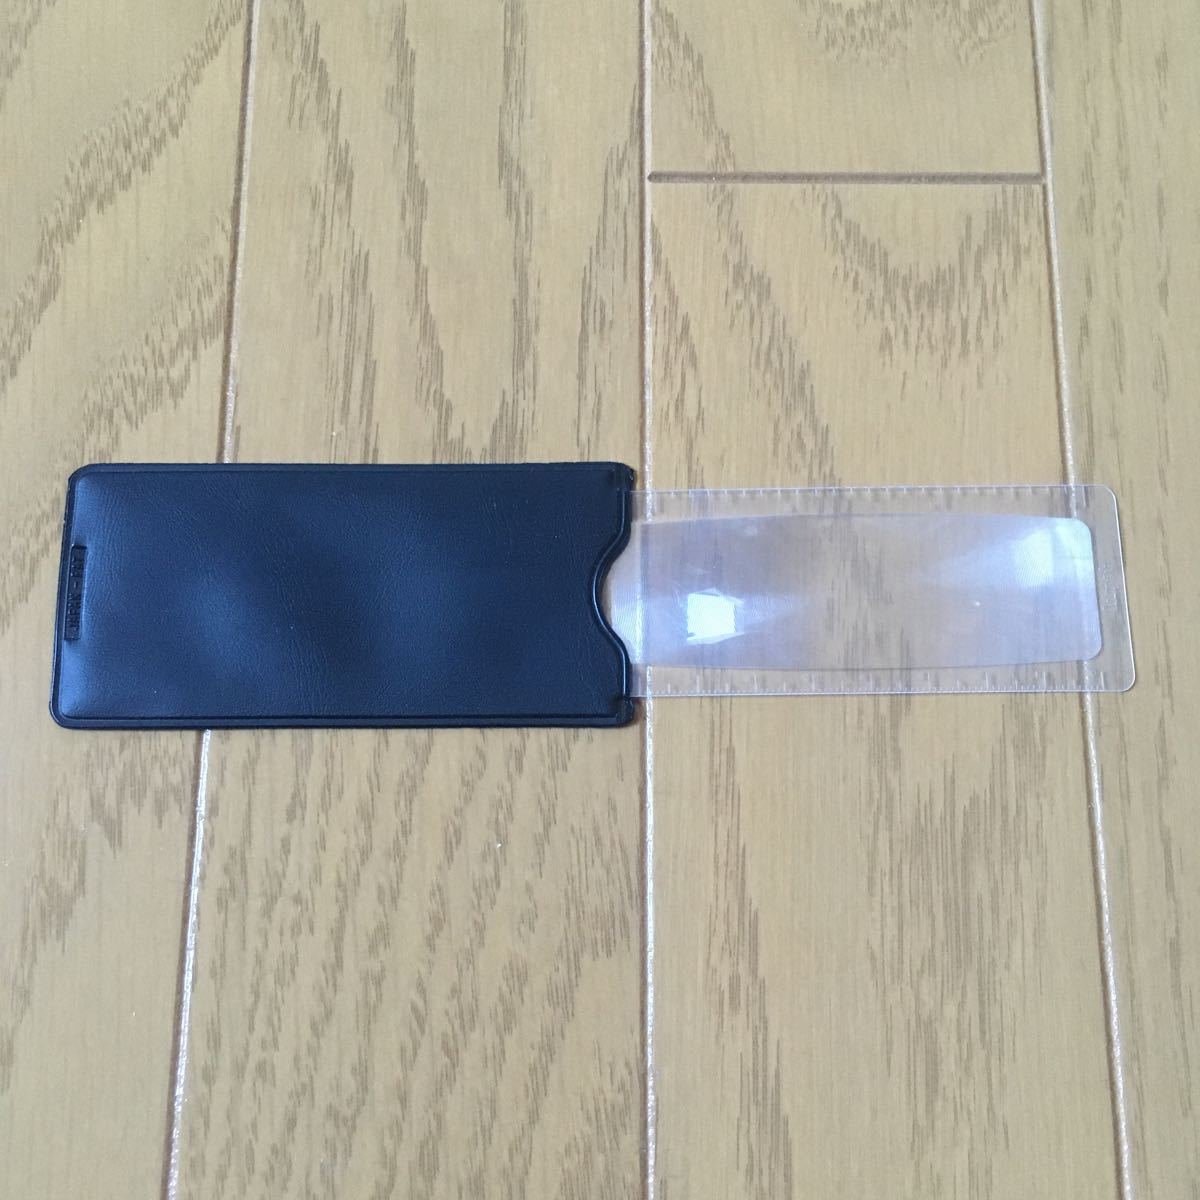  мобильный тонкий лупа насекомое очки увеличительное стекло 